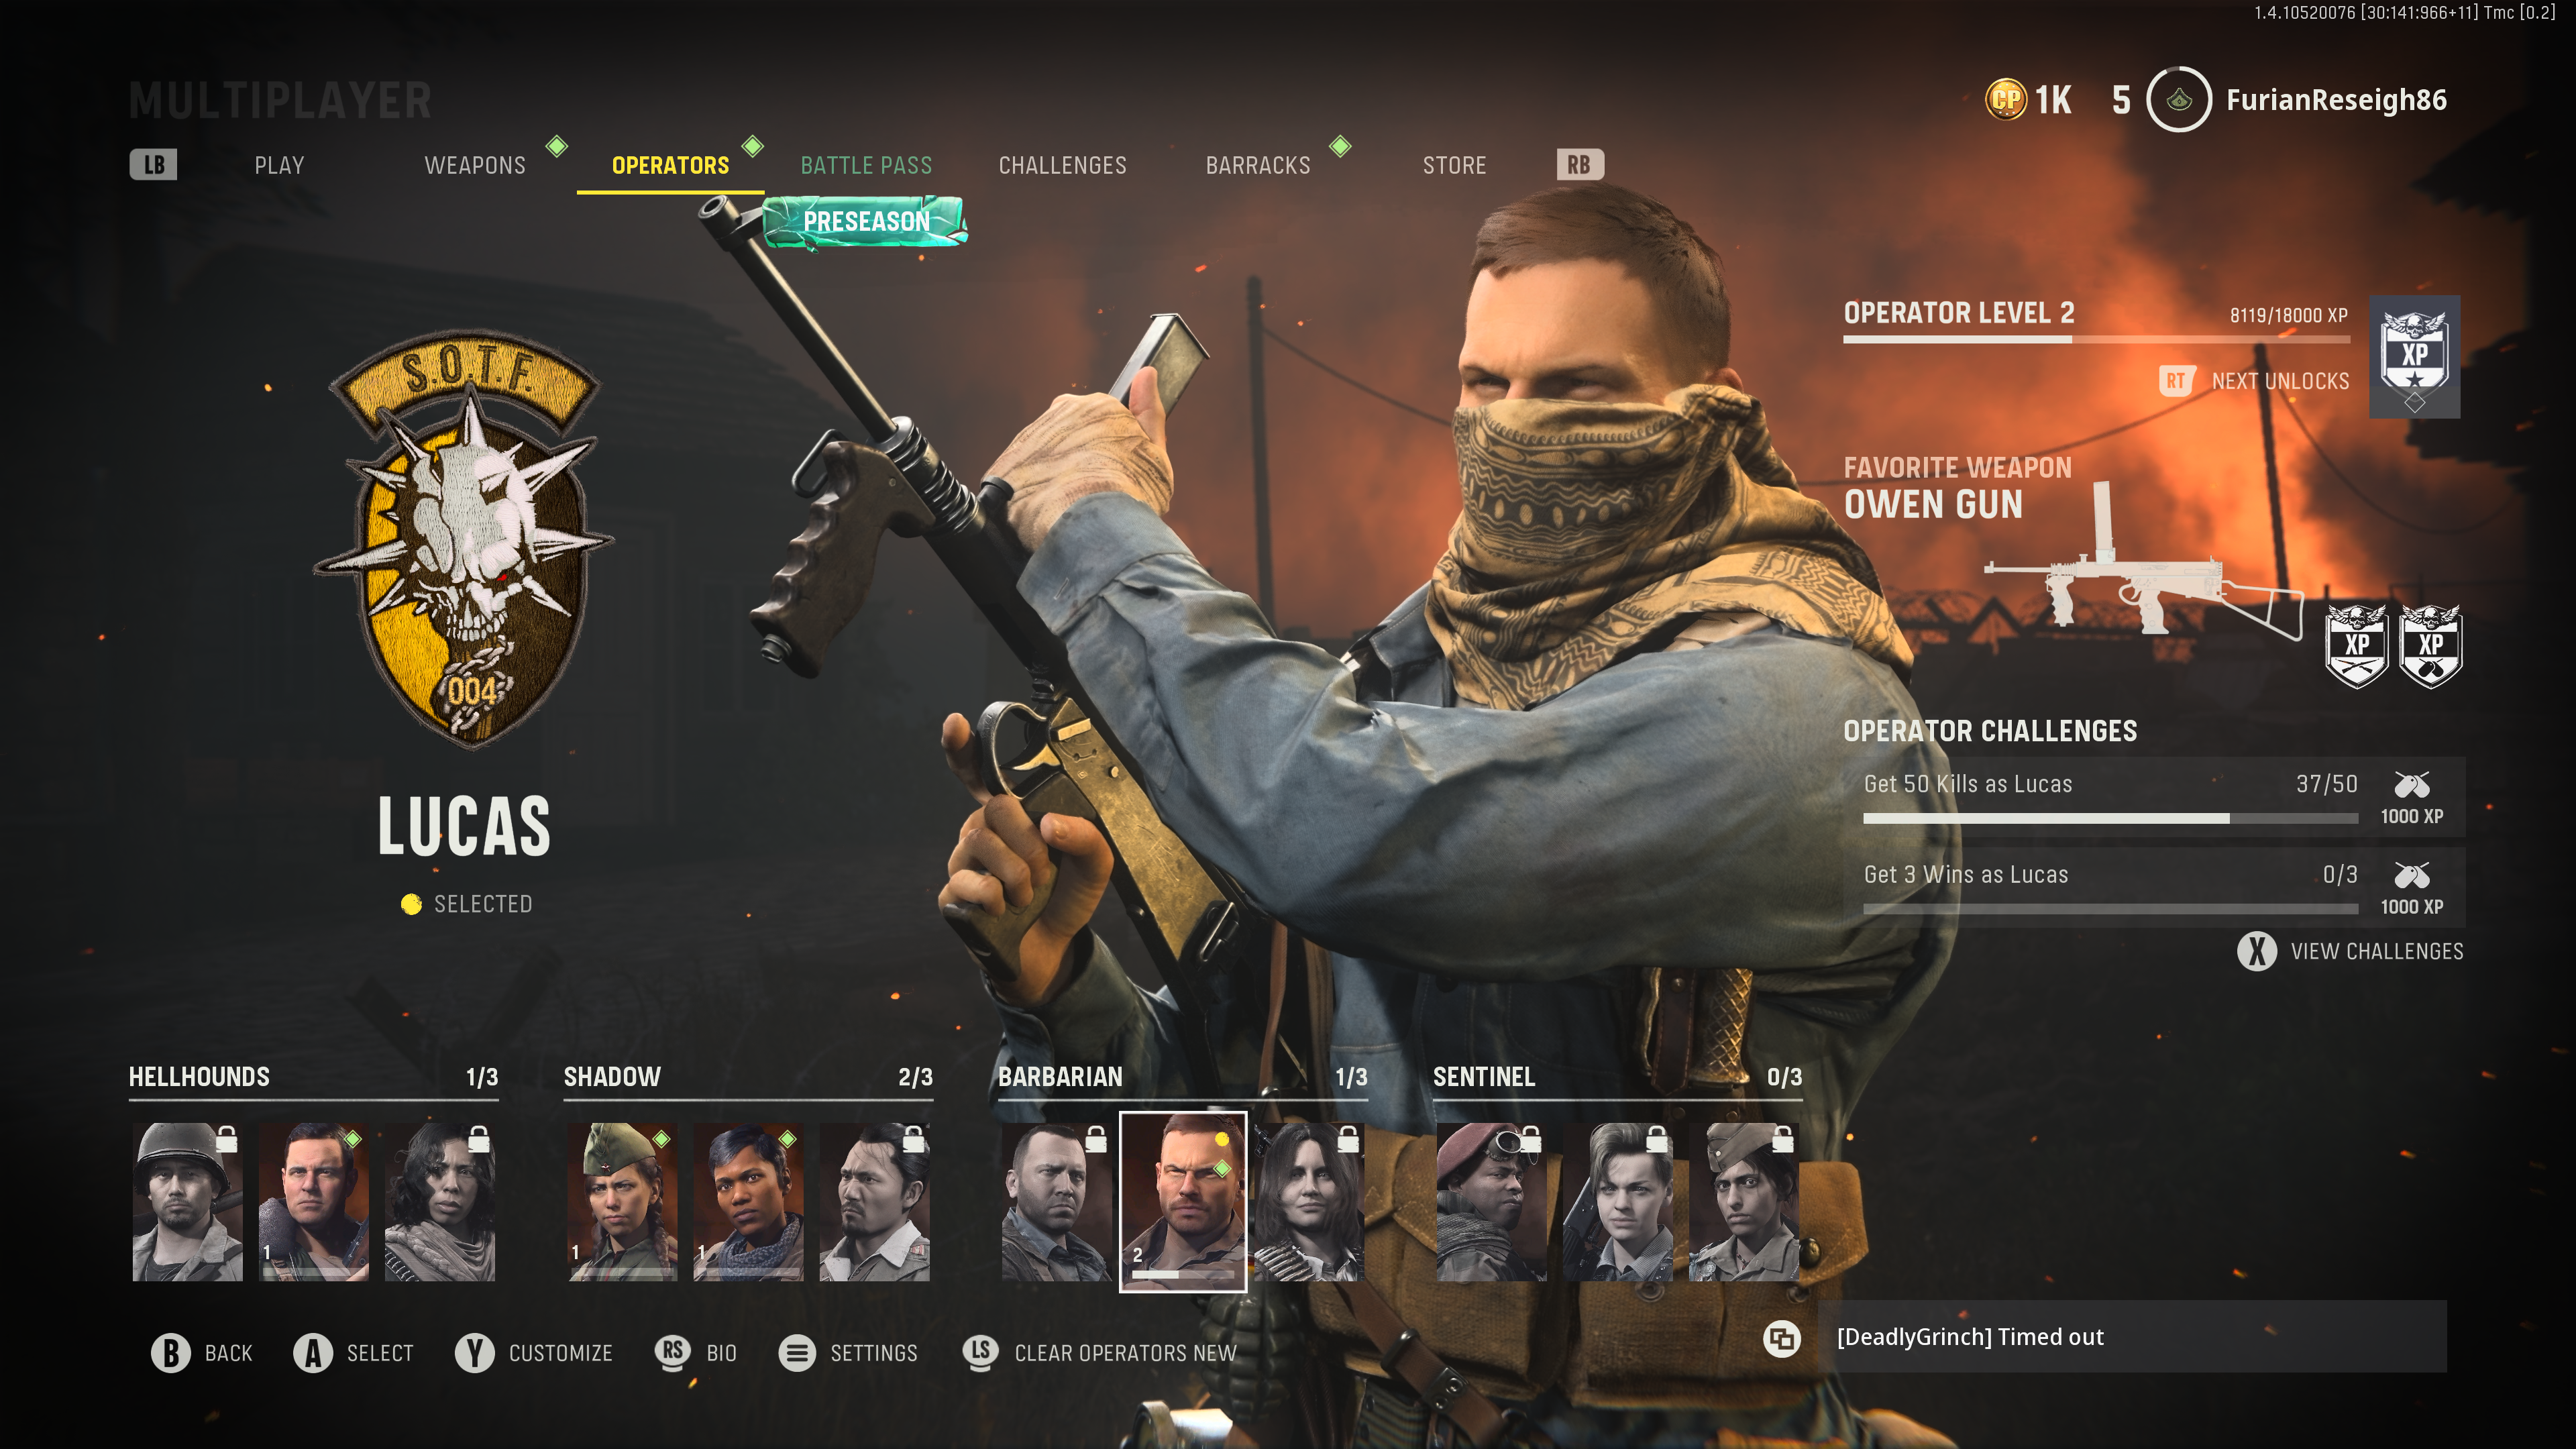 Conheça quatro operadores em Call of Duty: Vanguard Multiplayer